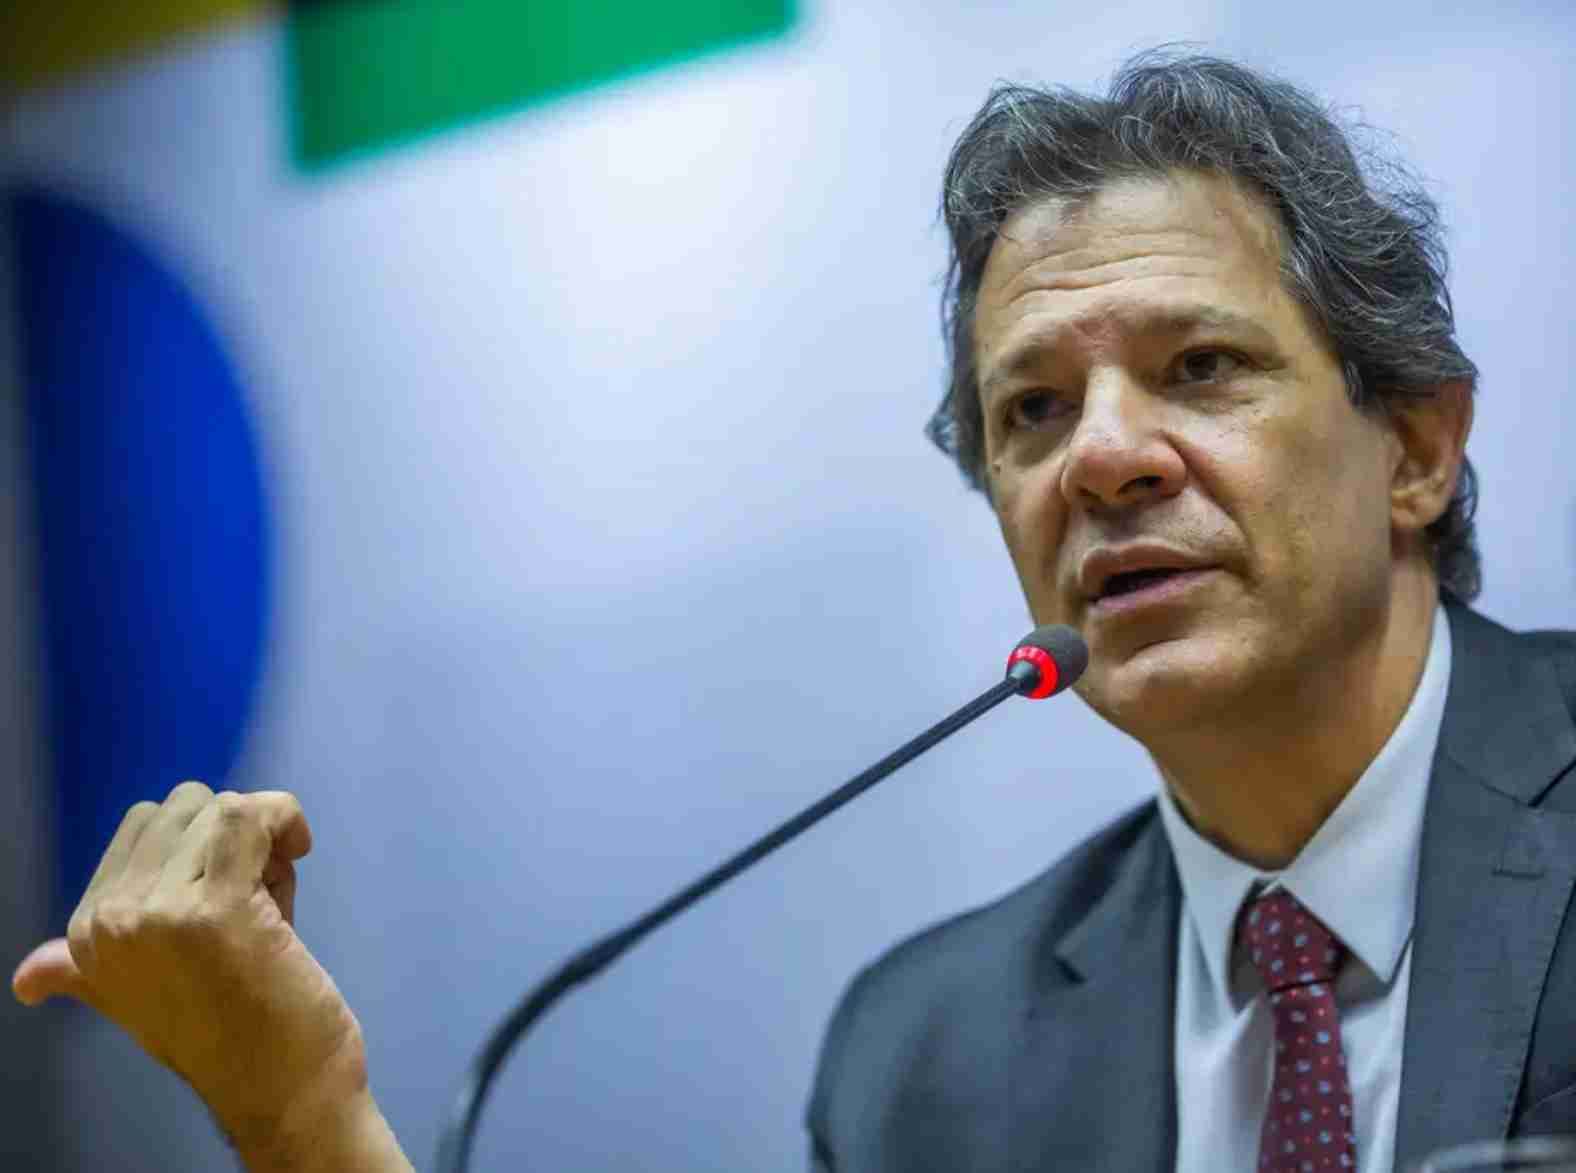 Desafios fiscais no Brasil: O novo pacote de Haddad e a controvérsia sobre gestão econômica